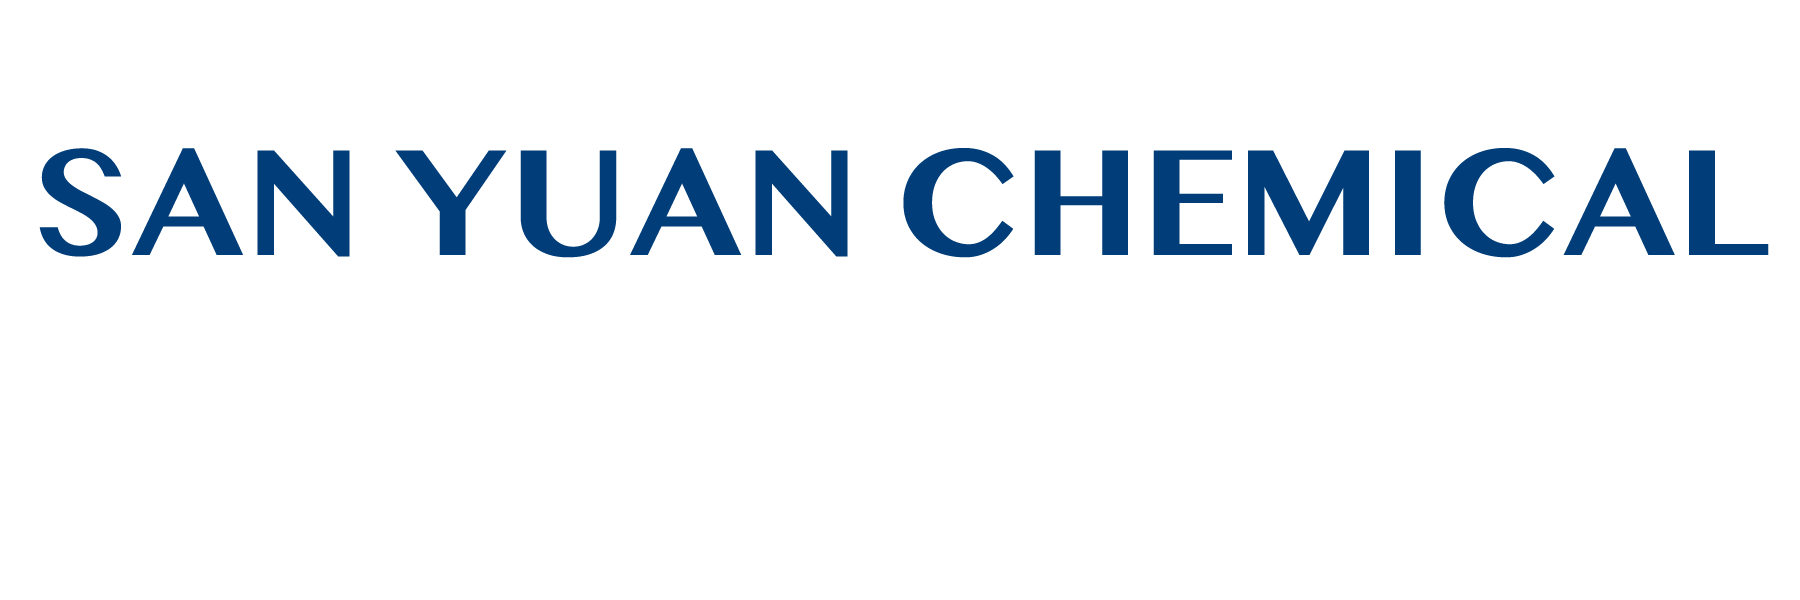 San Yuan Chemical Co., Ltd.